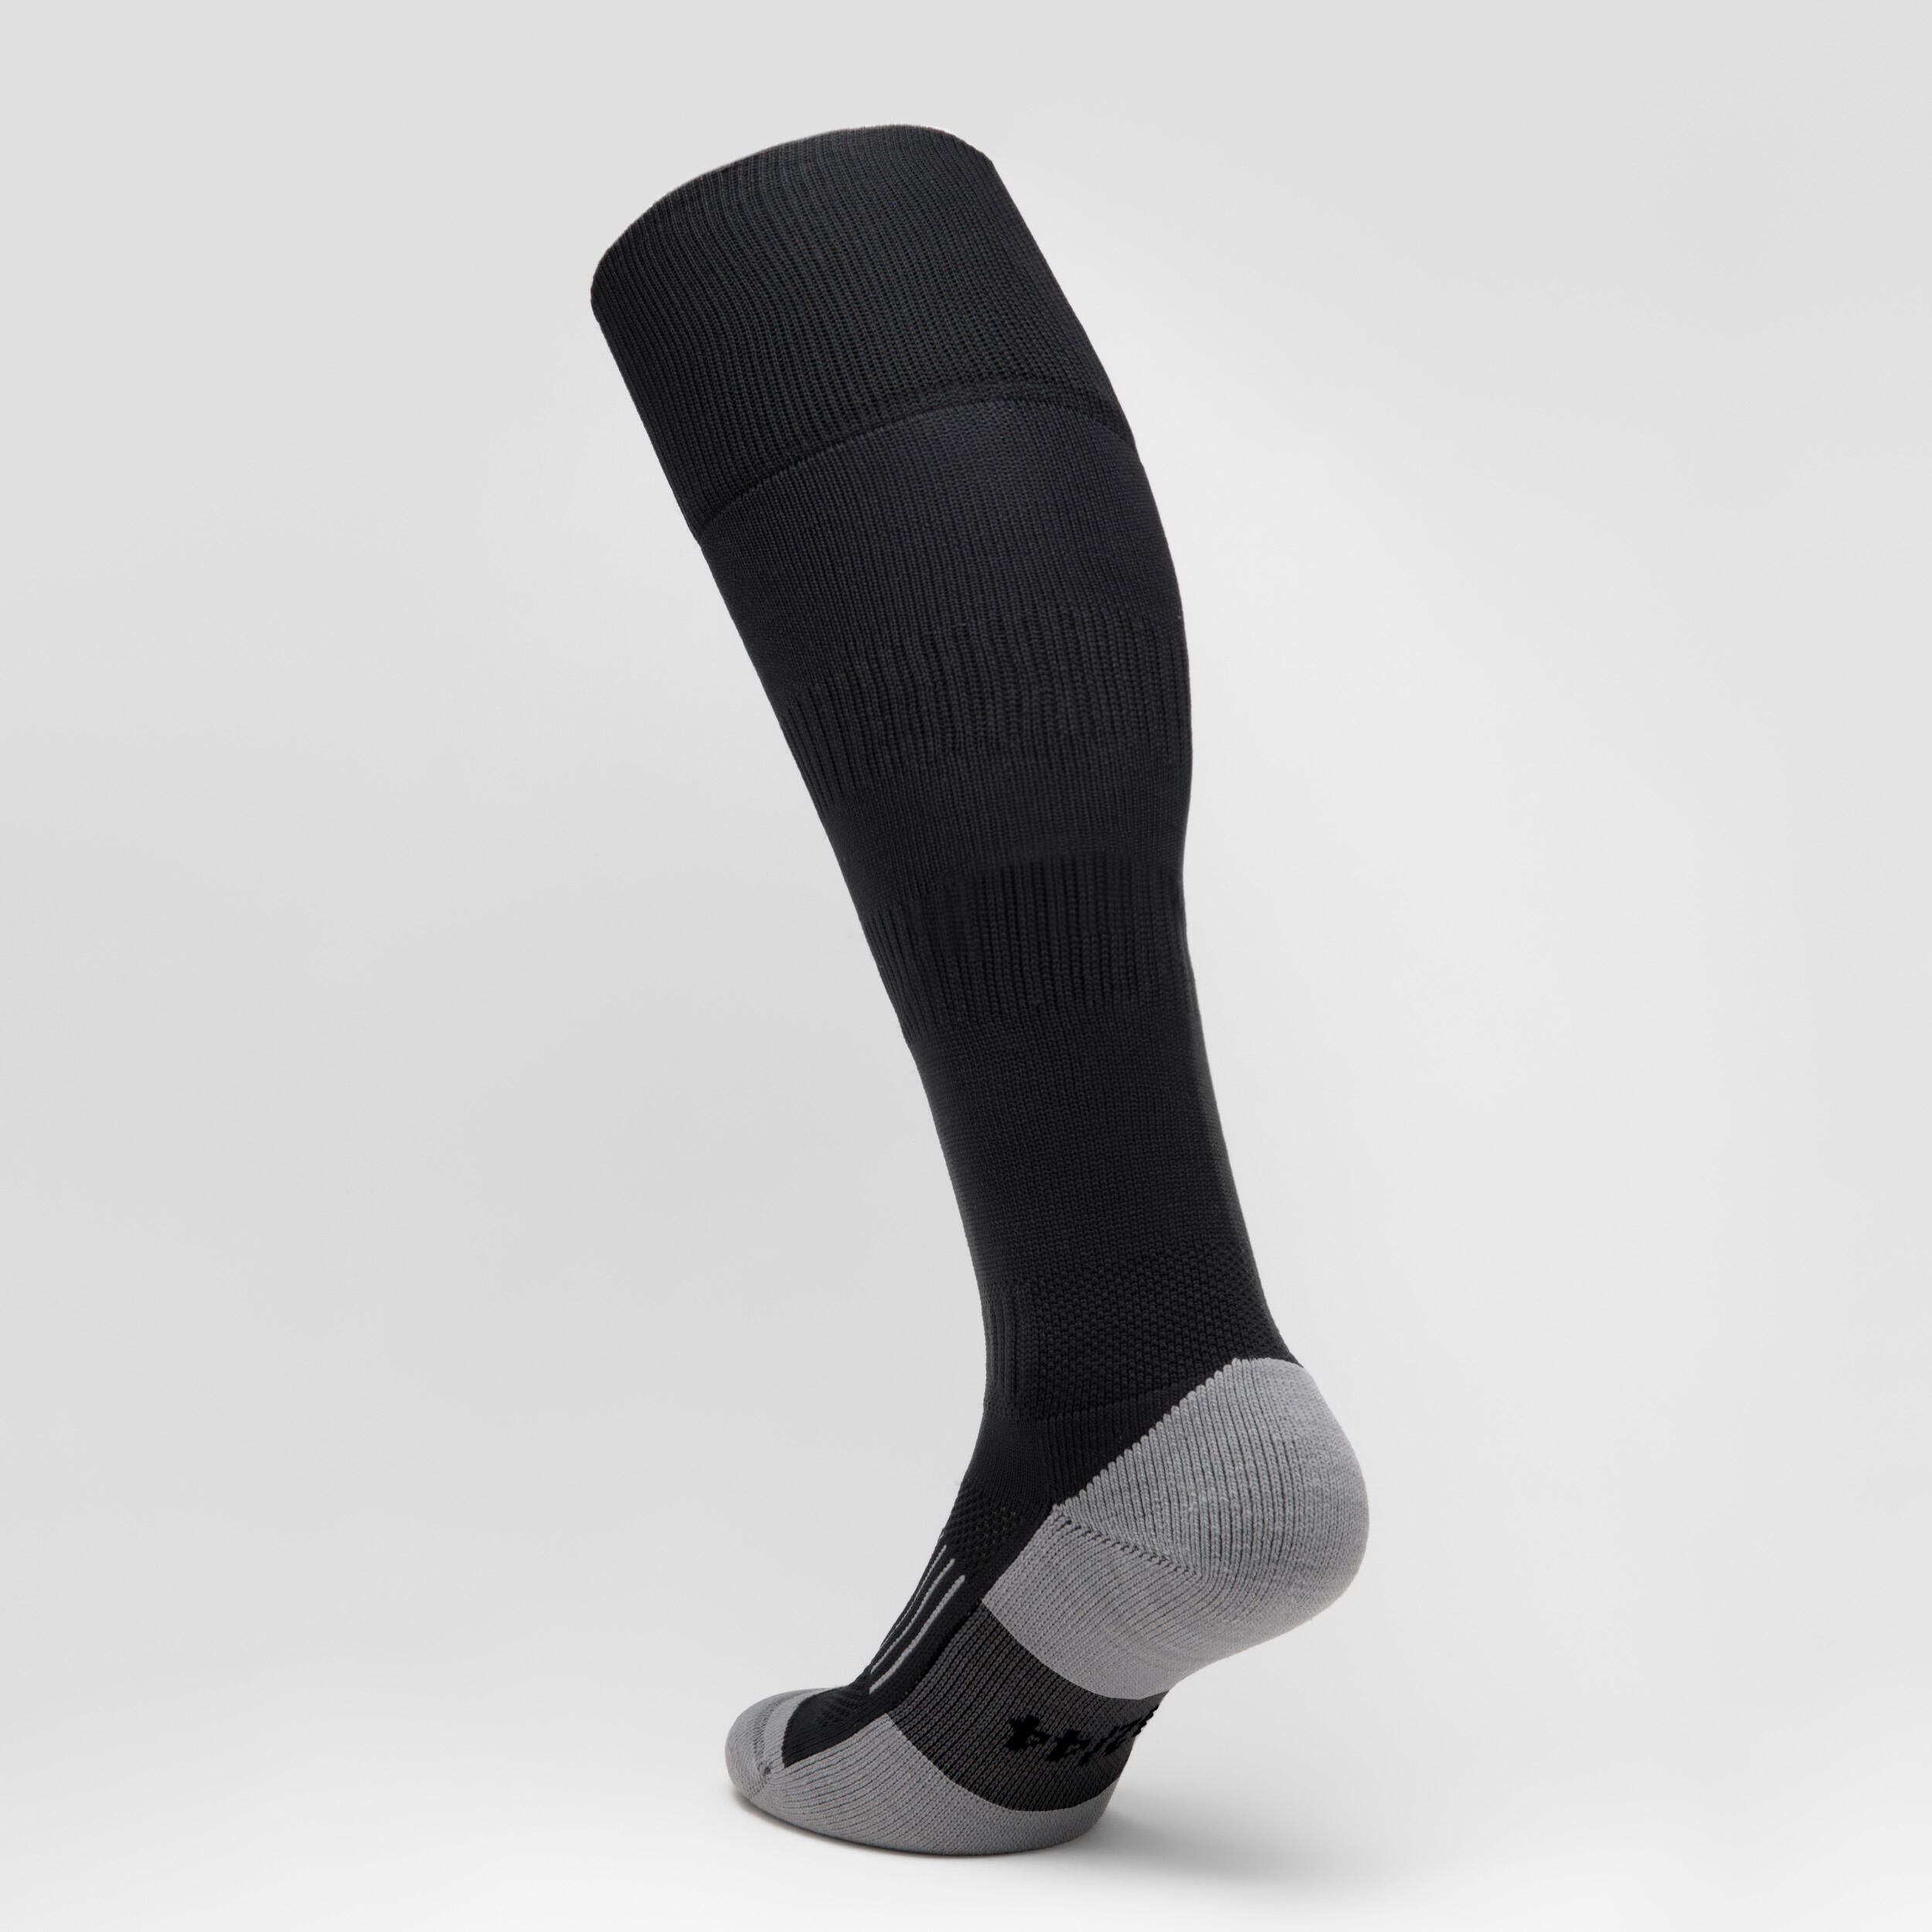 Kids' Knee-Length Rugby Socks R500 - Black 2/5